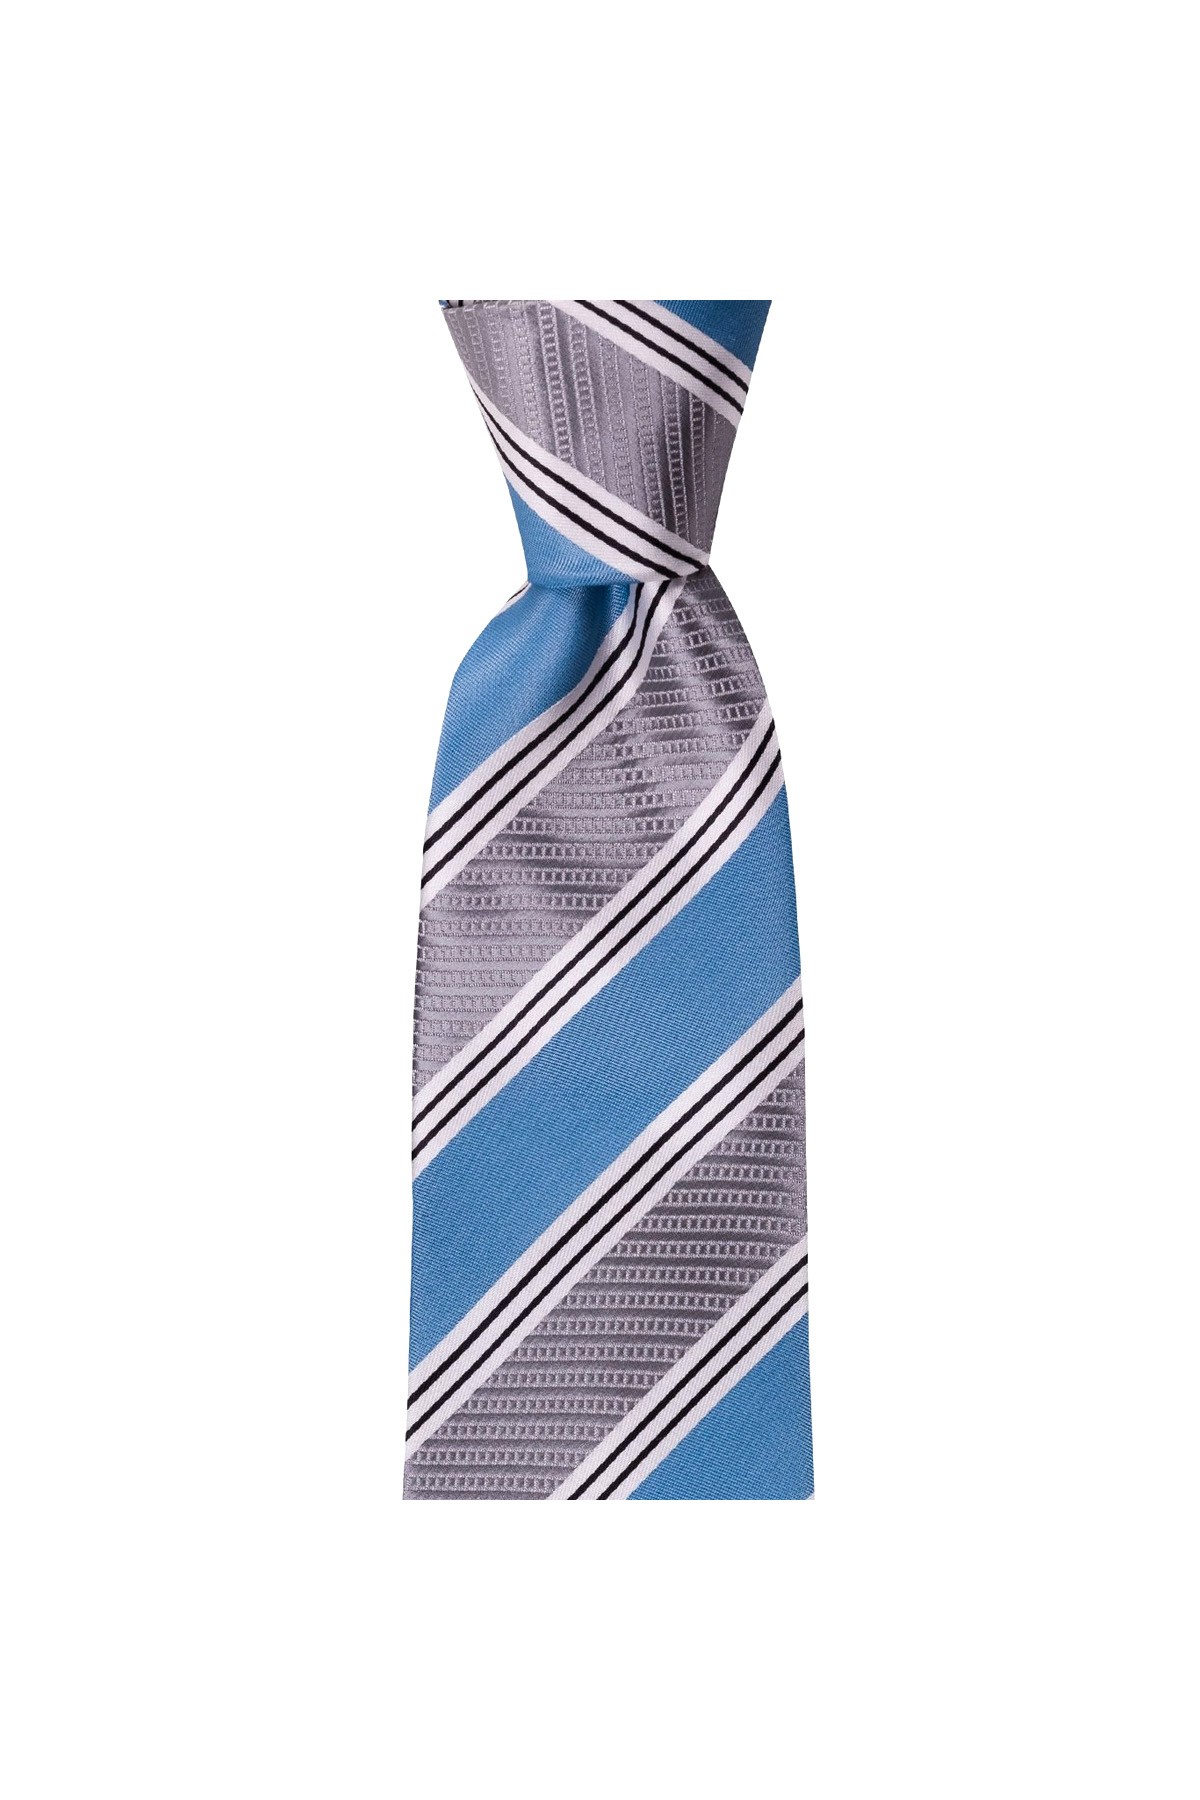 Geniş çizgili 8 cm genişliğinde mendilli kravat